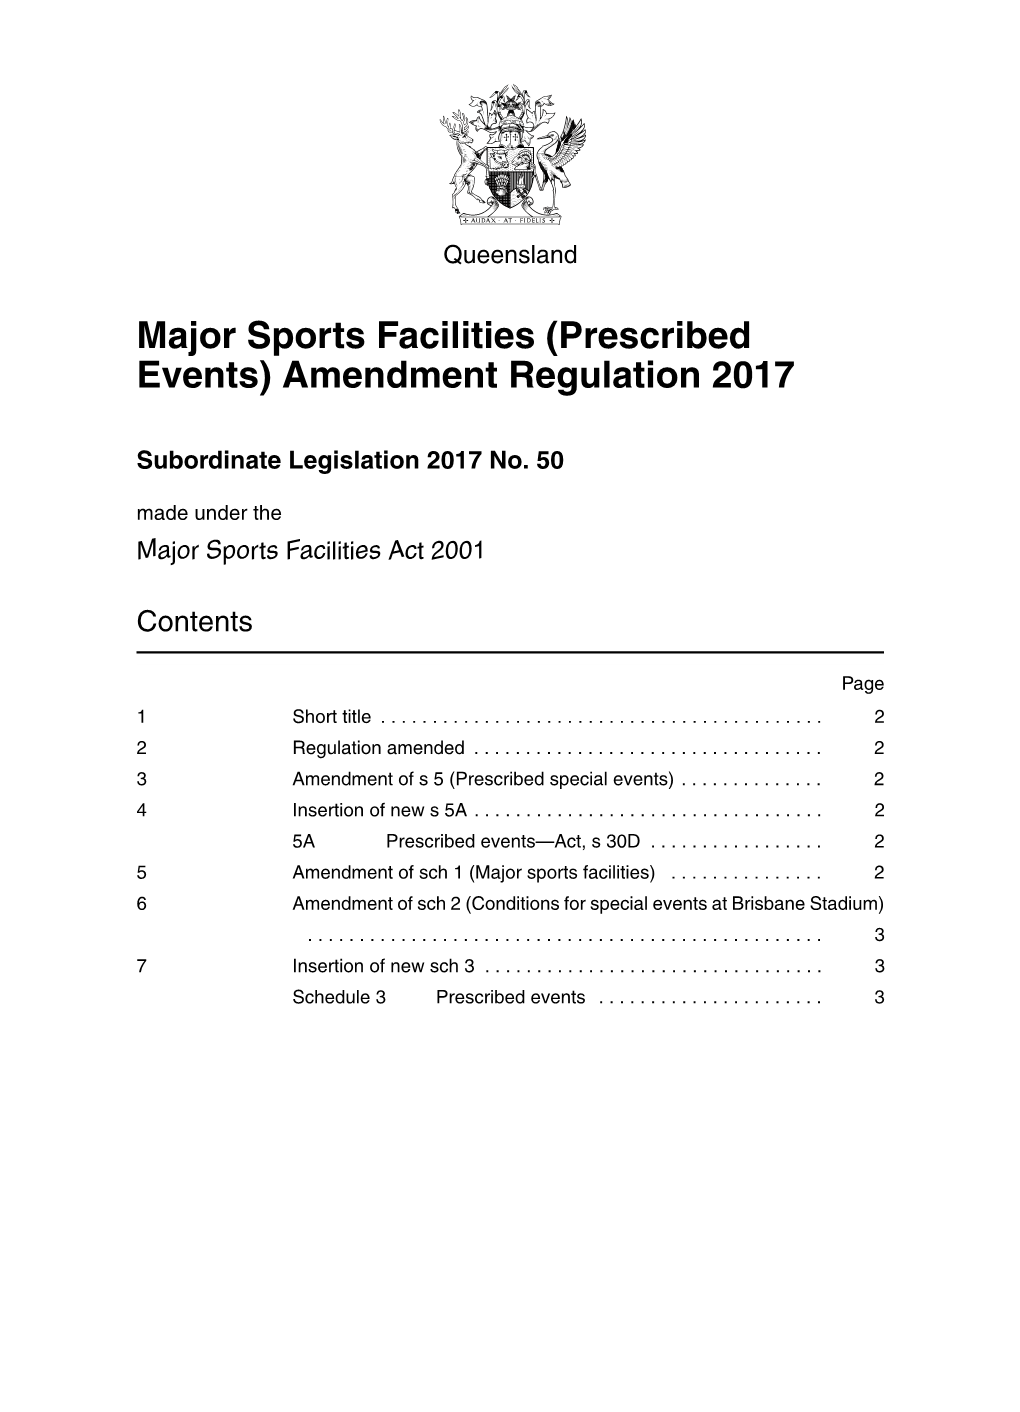 Major Sports Facilities (Prescribed Events) Amendment Regulation 2017